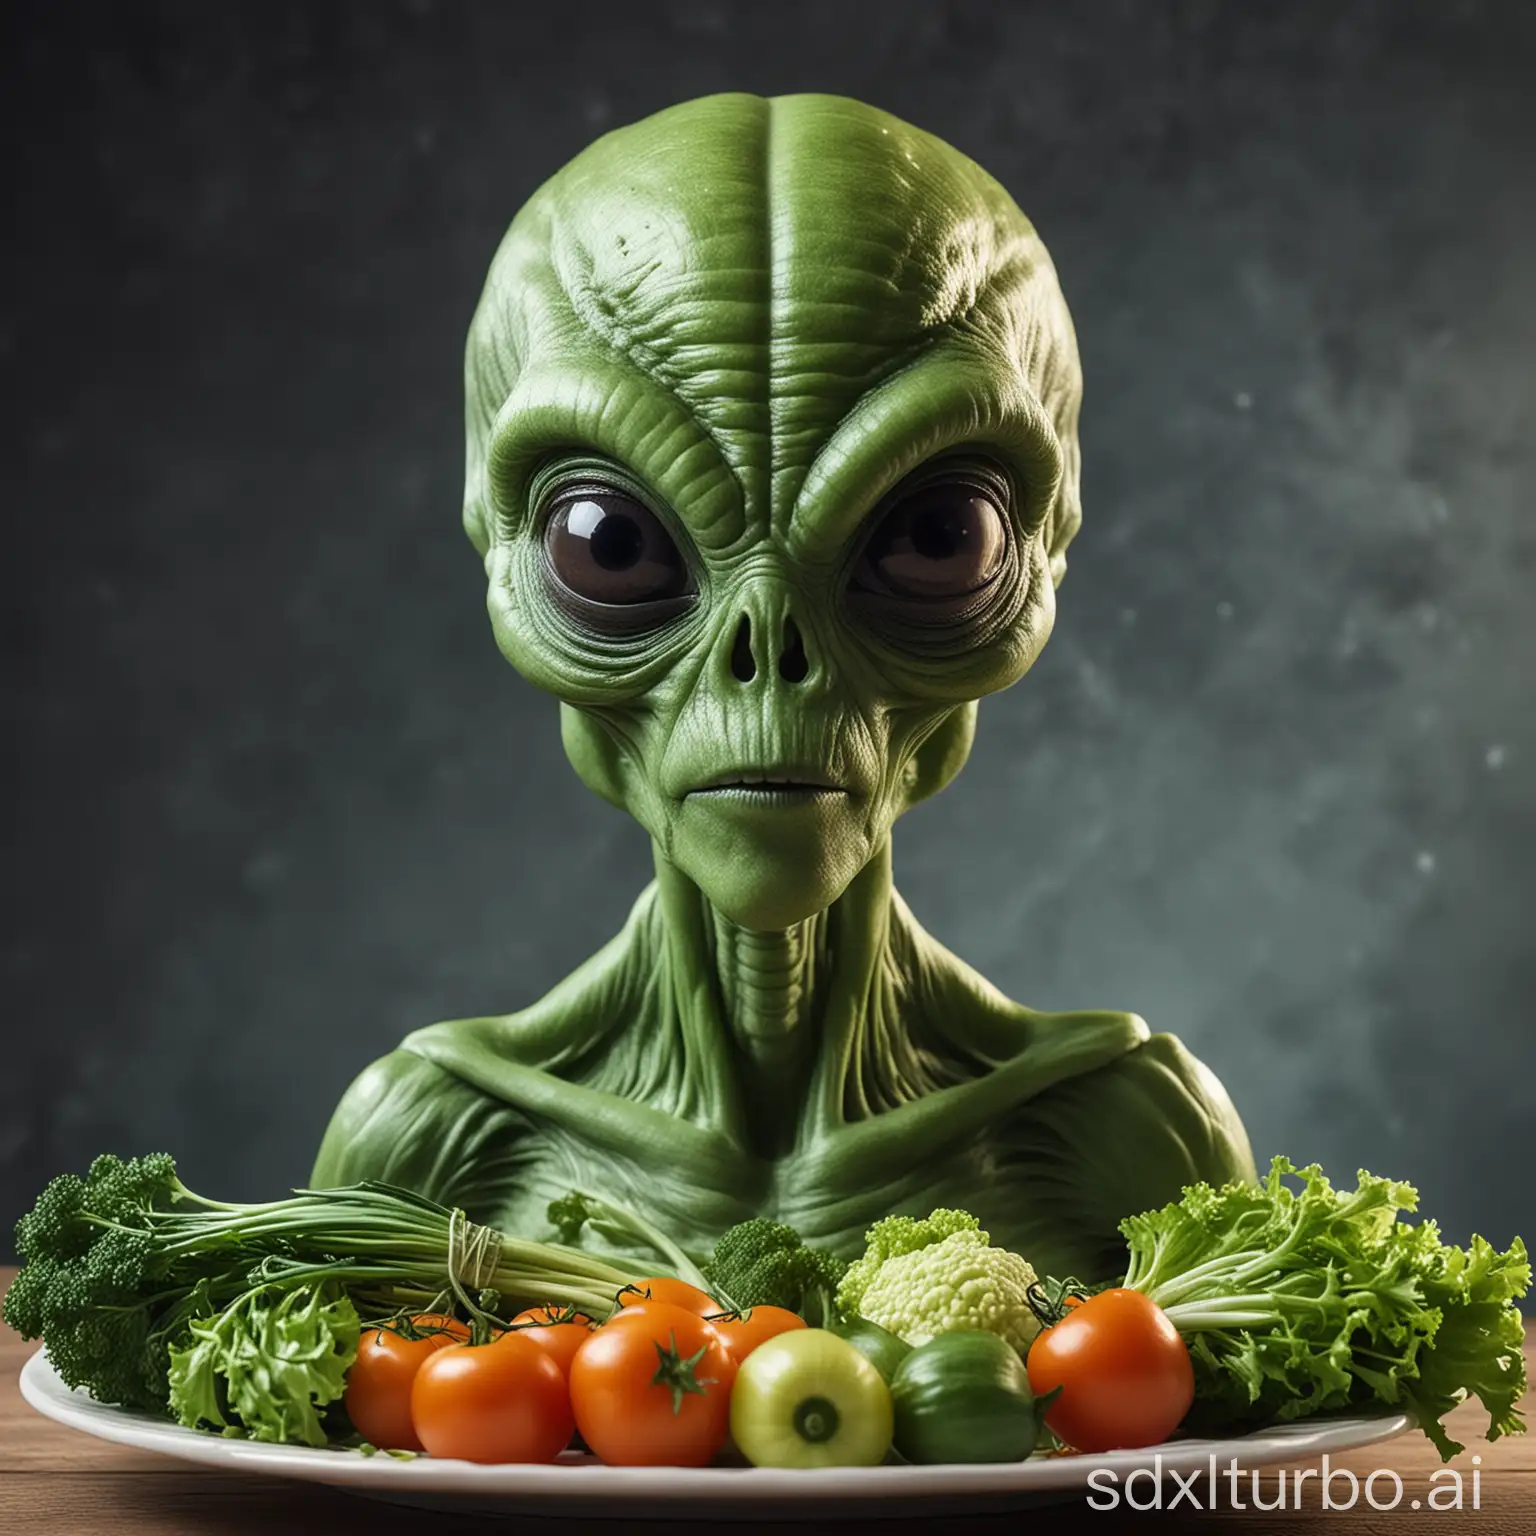 Vegan Alien who eat some vegetables